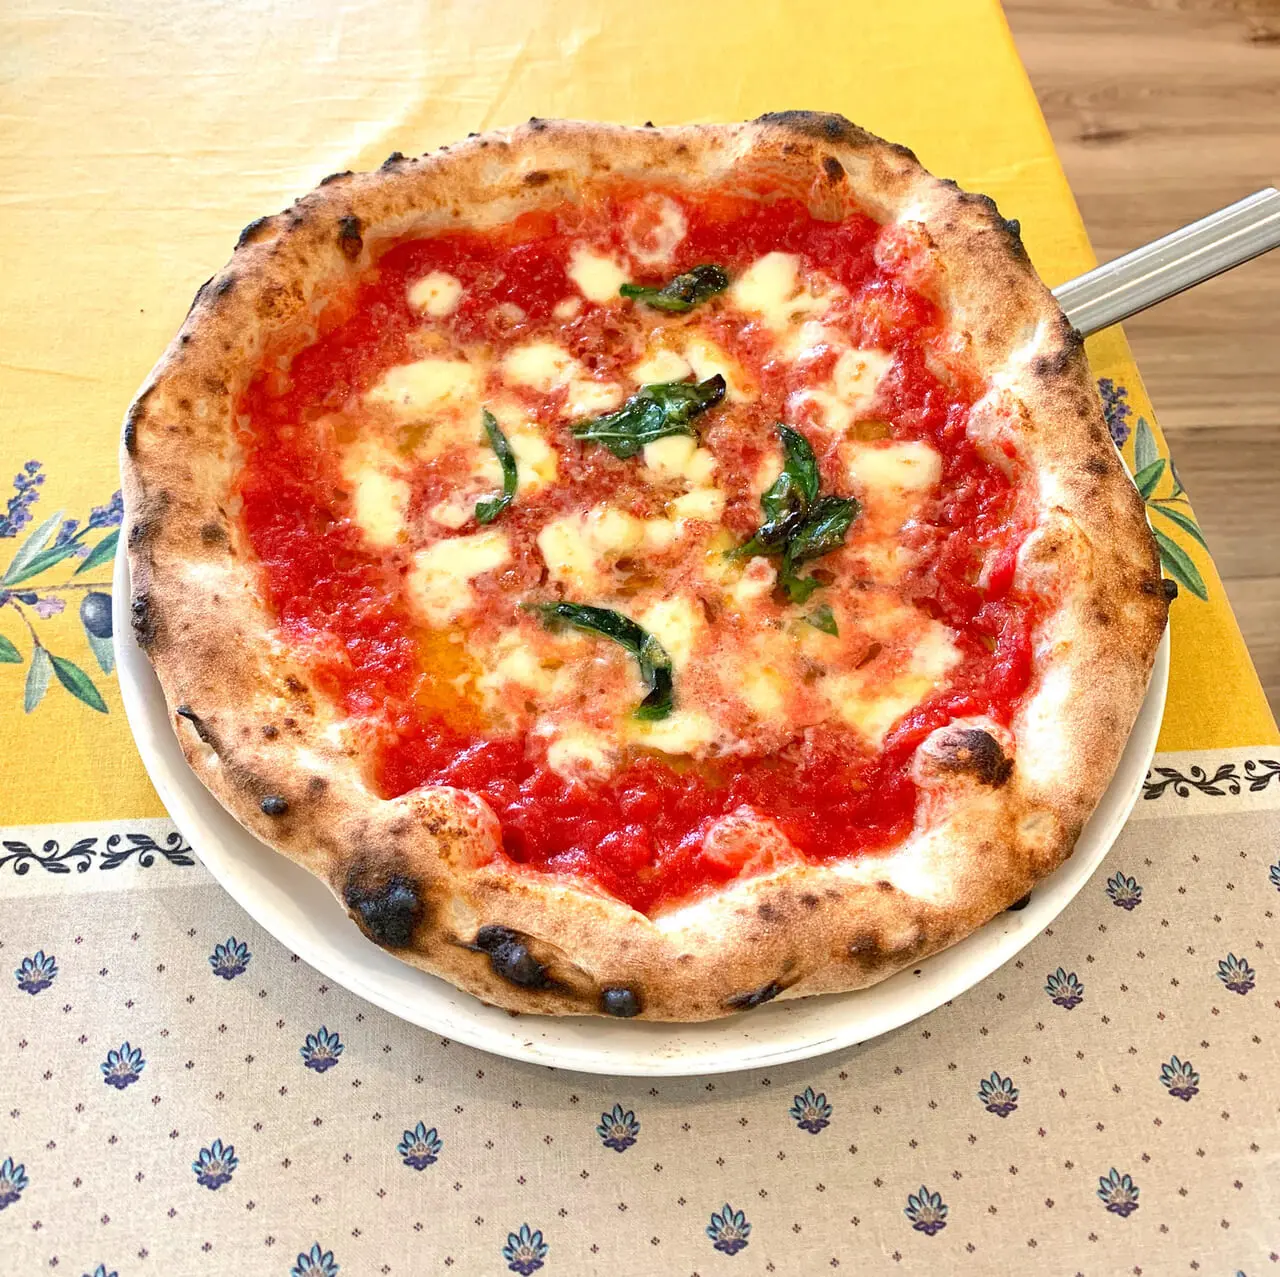 伯方島の「イゾラーニ」ではしまなみの食材を使用した美味しいピザが食べられます!!